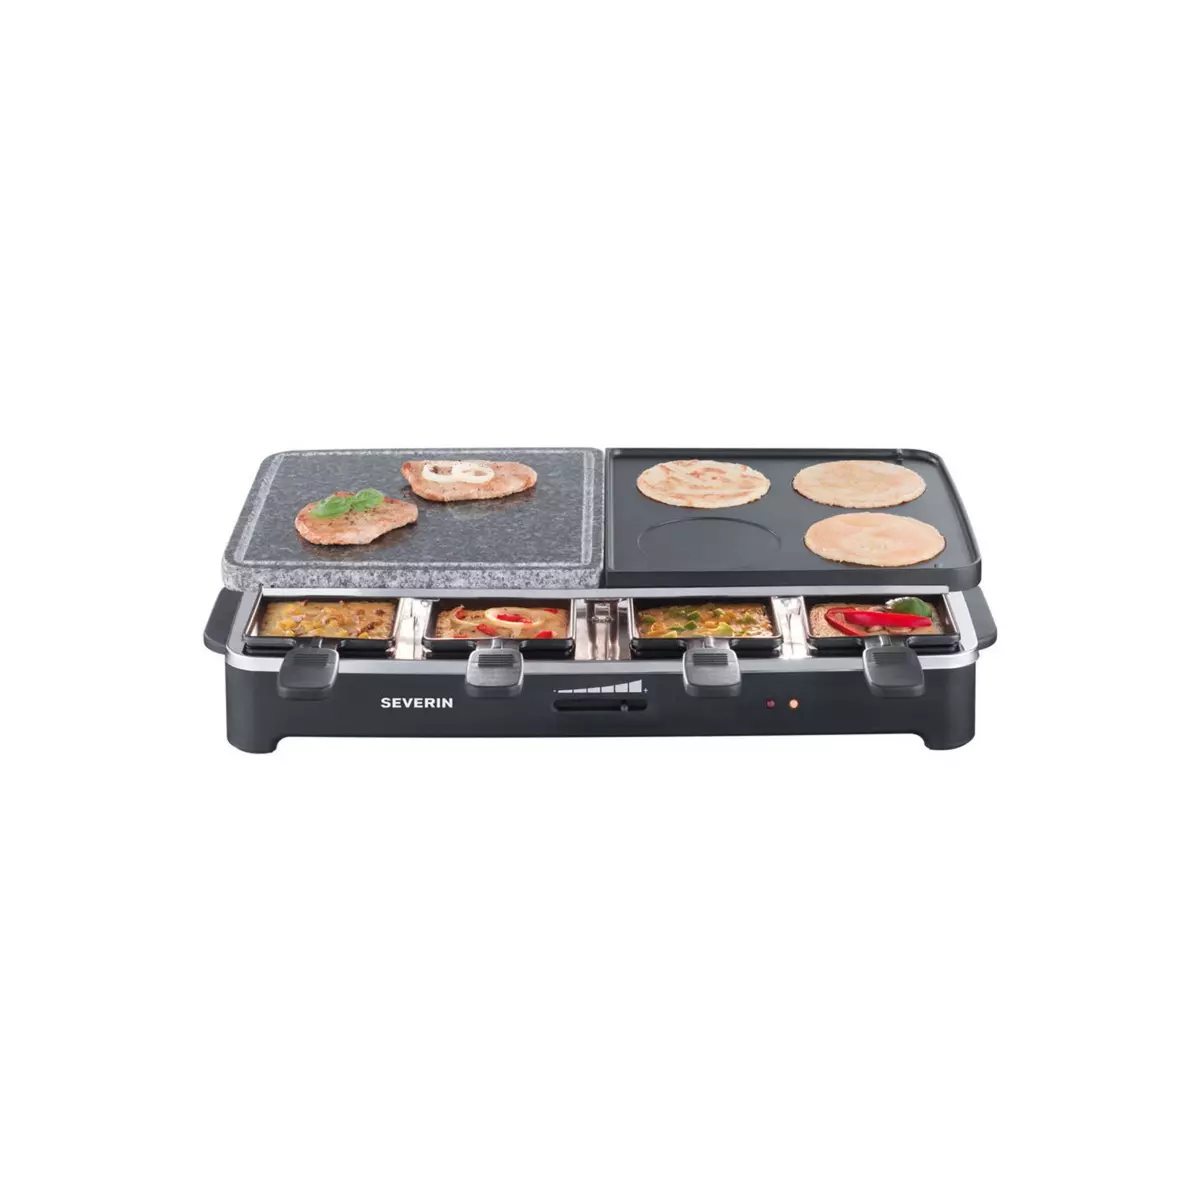 SEVERIN Raclette RG9500 Grill raclette multifonction avec pierre de cuisson